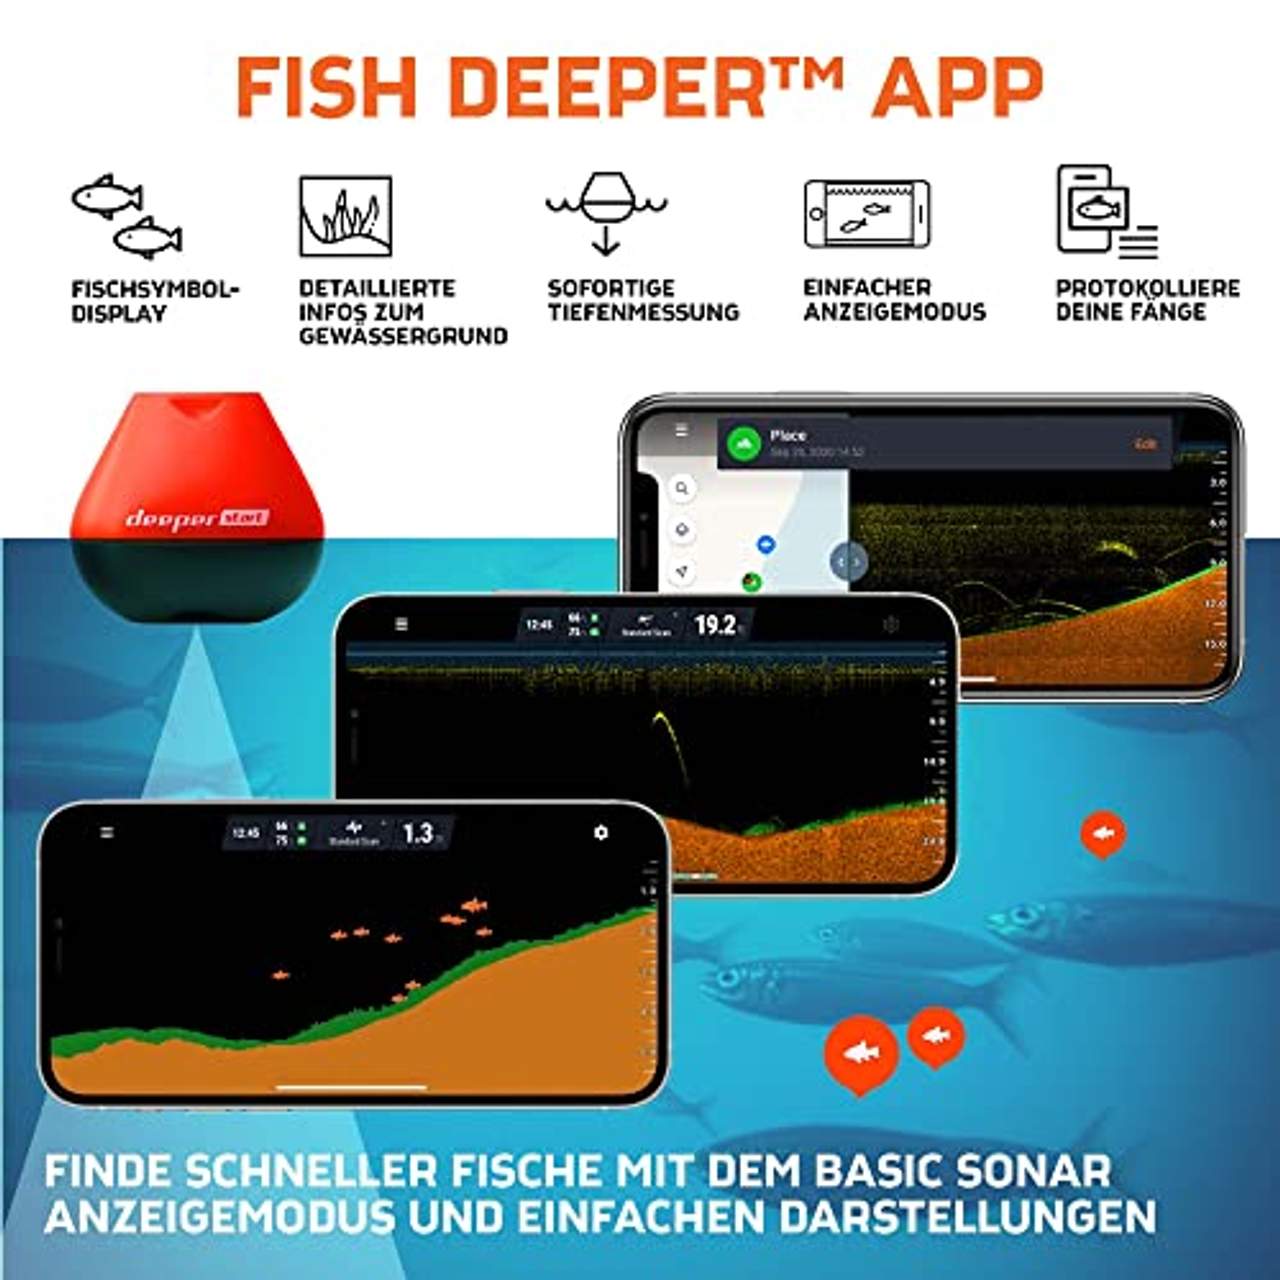 Deeper Start smart Fischfinder